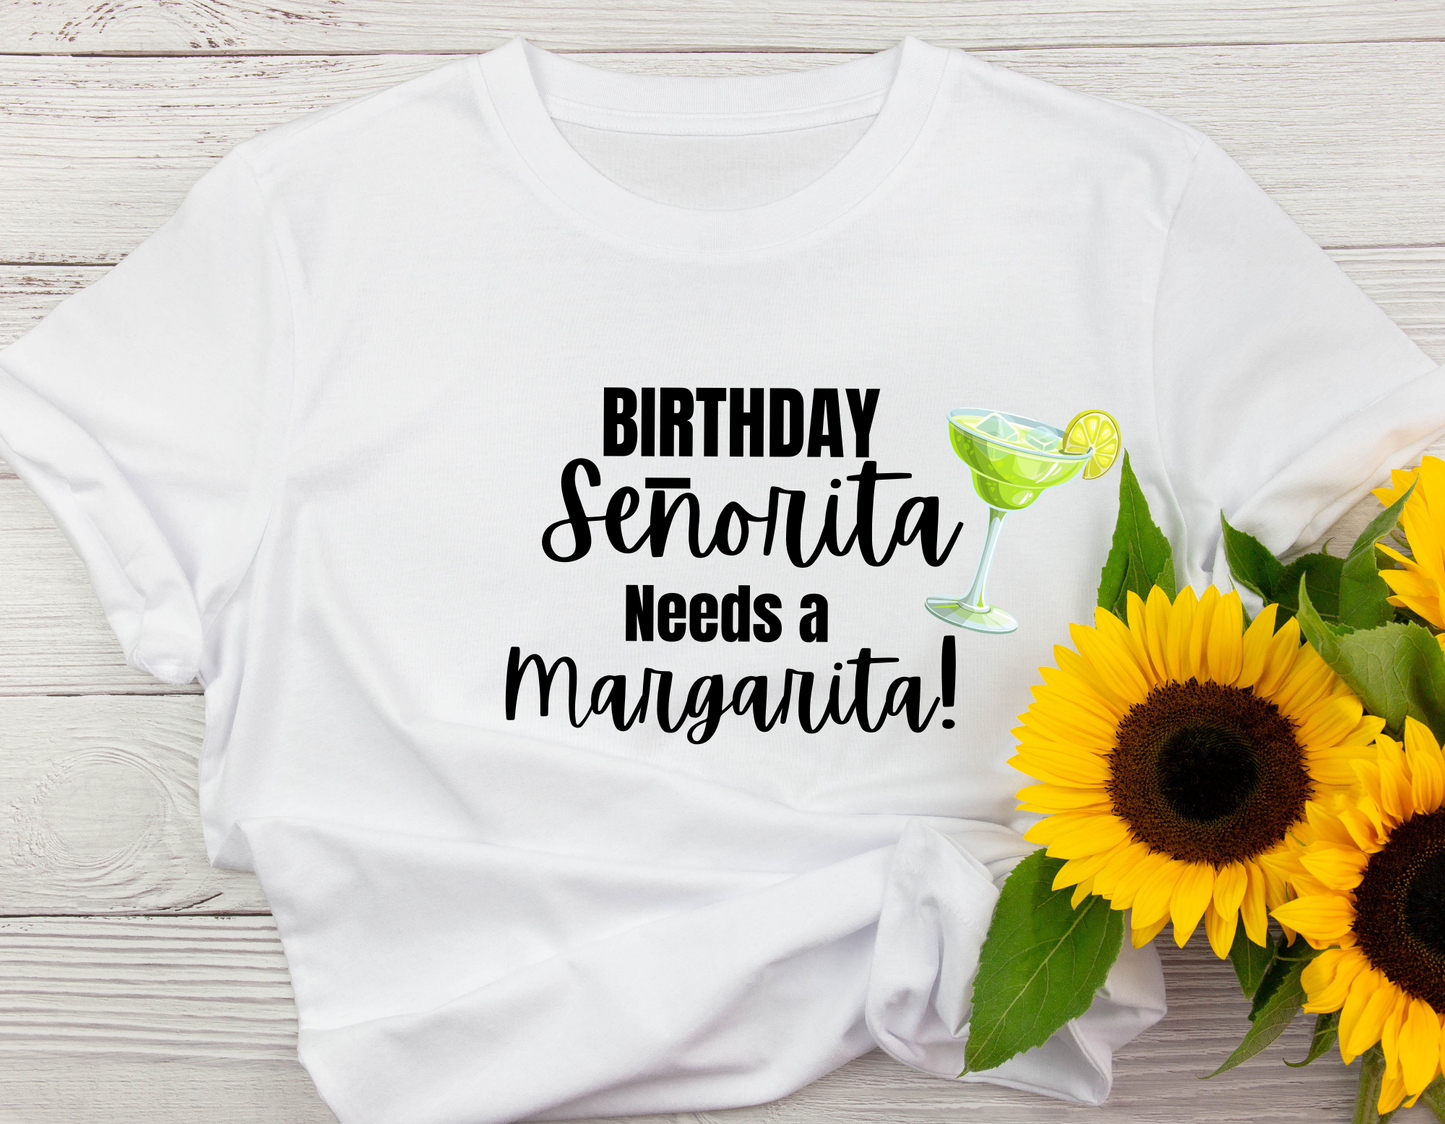 Margarita Senorita Birthday